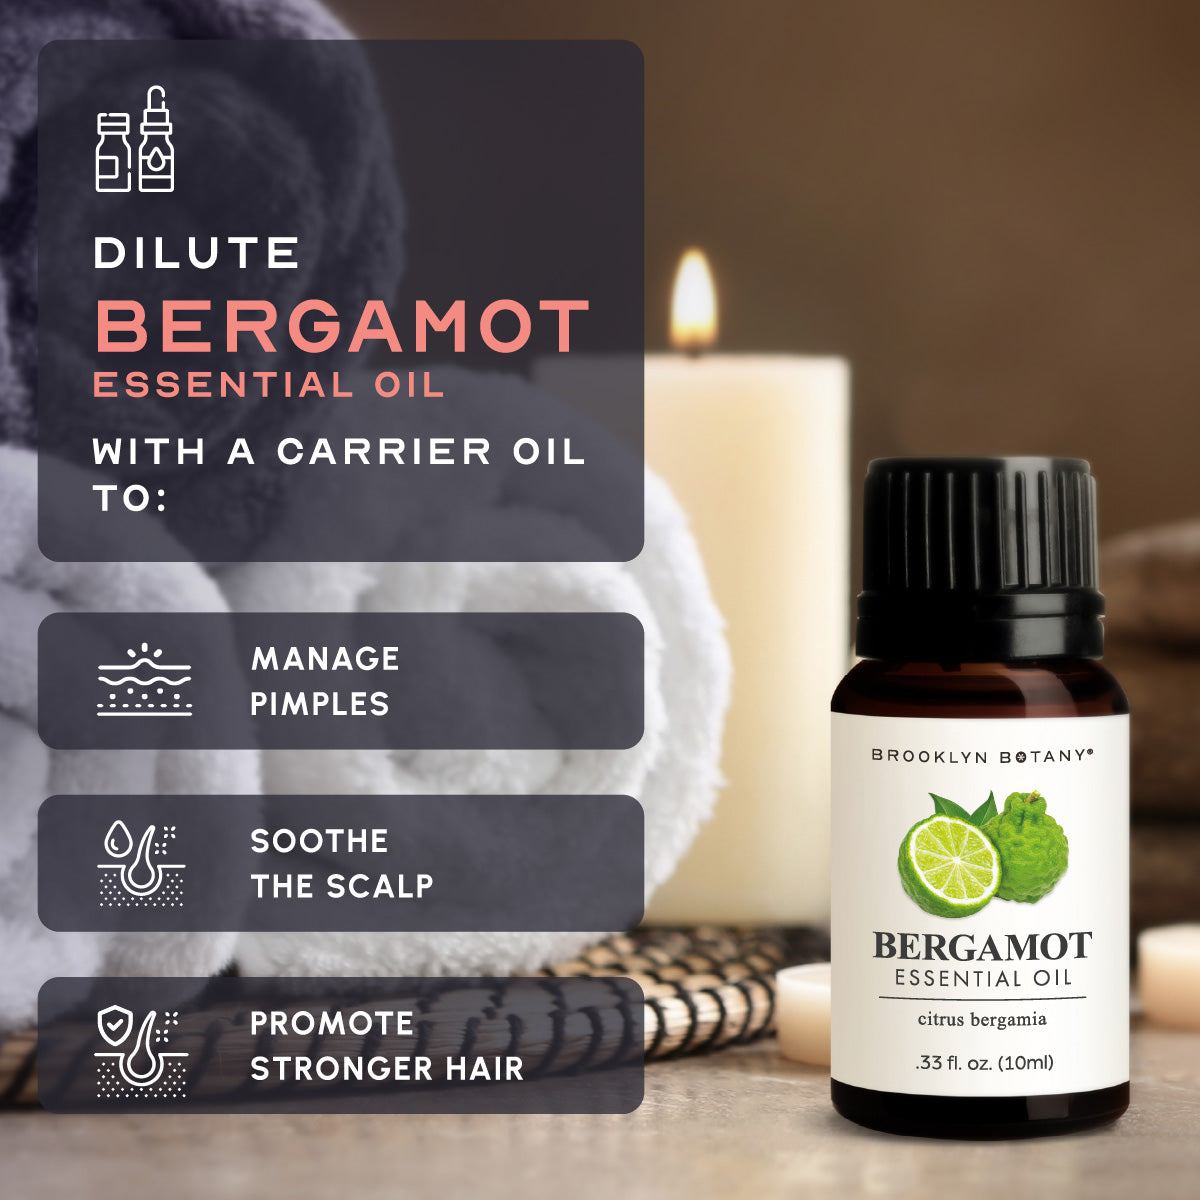 Bergamot Essential Oil benefits